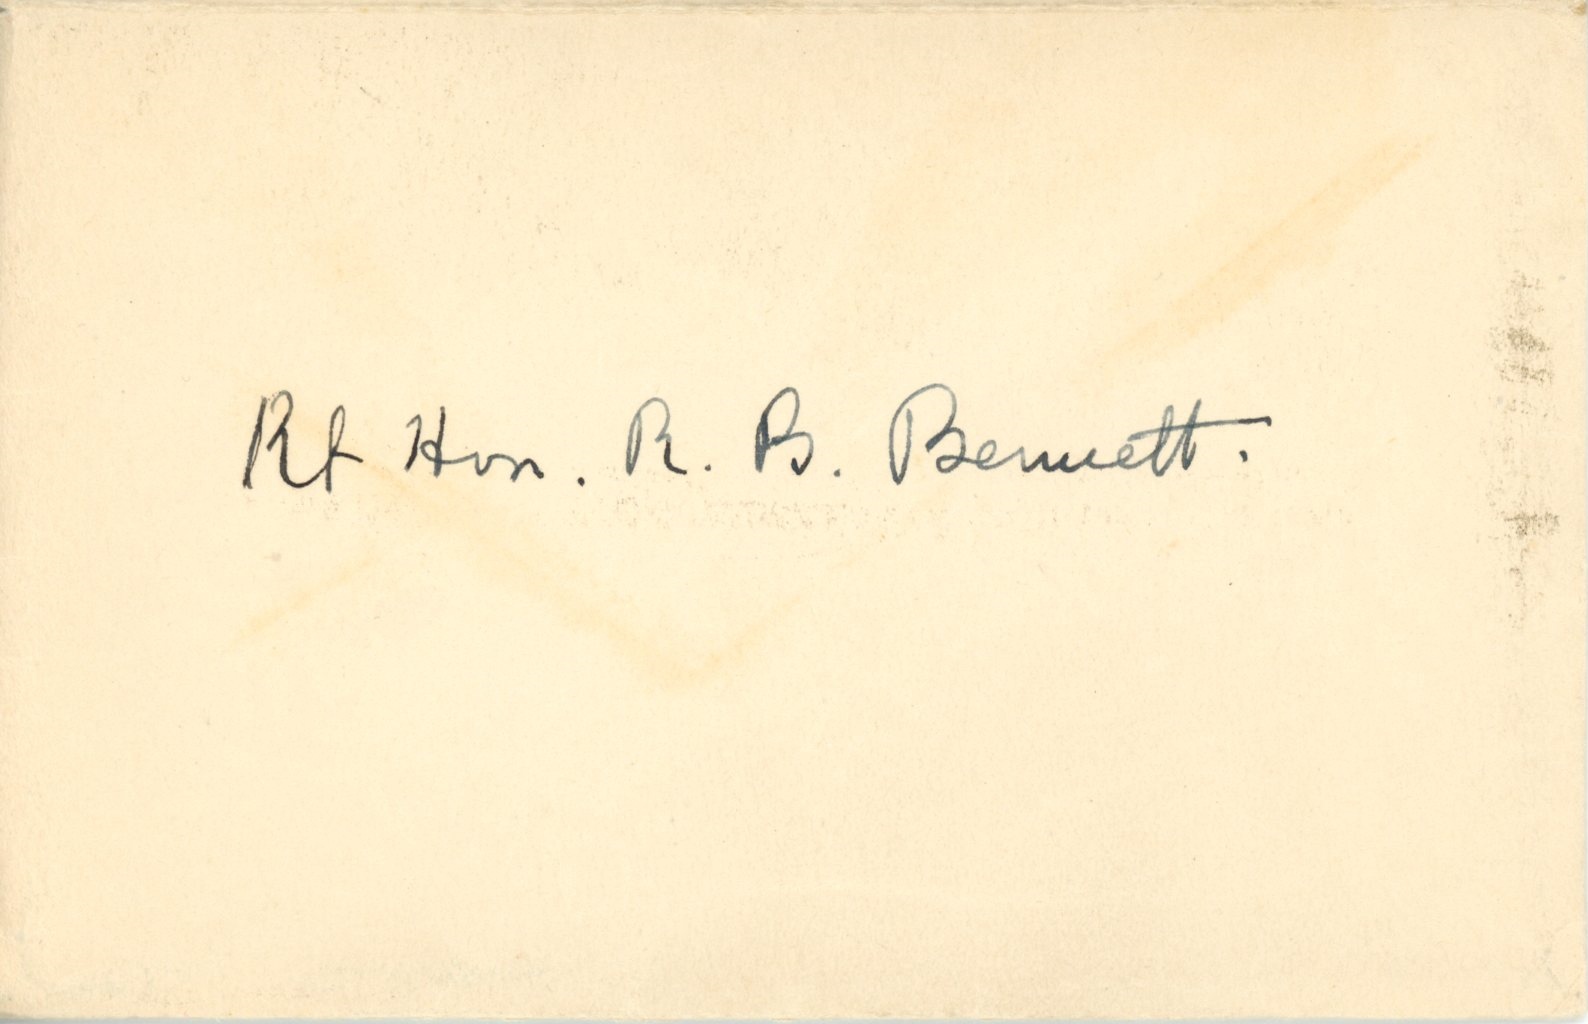 Sepia envelope; the name “Rt Hon. R. B. Bennett” is handwritten in black ink.